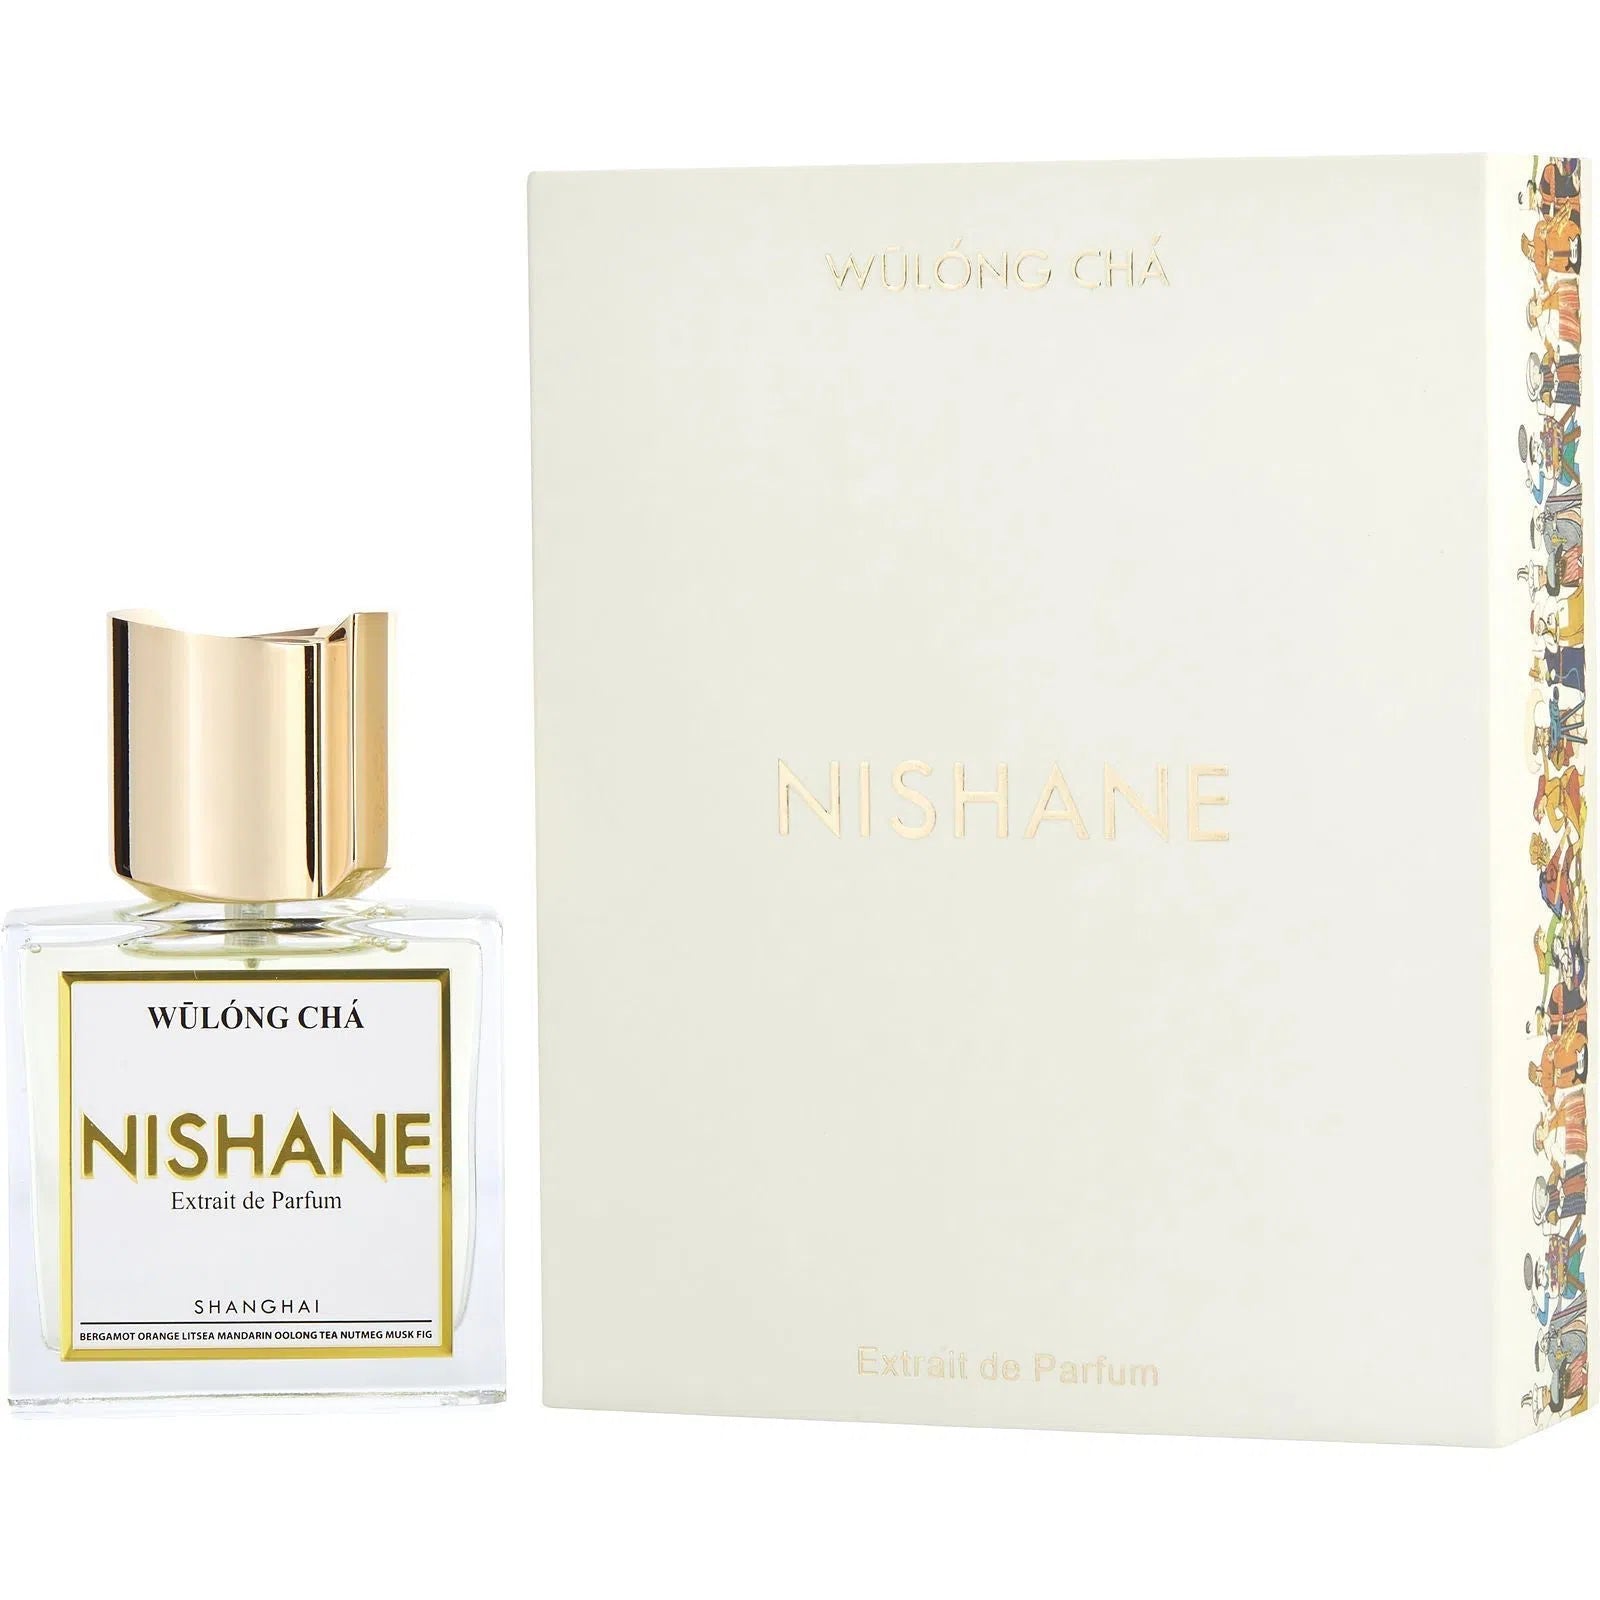 Perfume Nishane Wulong Cha Extrait de Parfum (U) / 50 ml - 8681008055418- Prive Perfumes Honduras